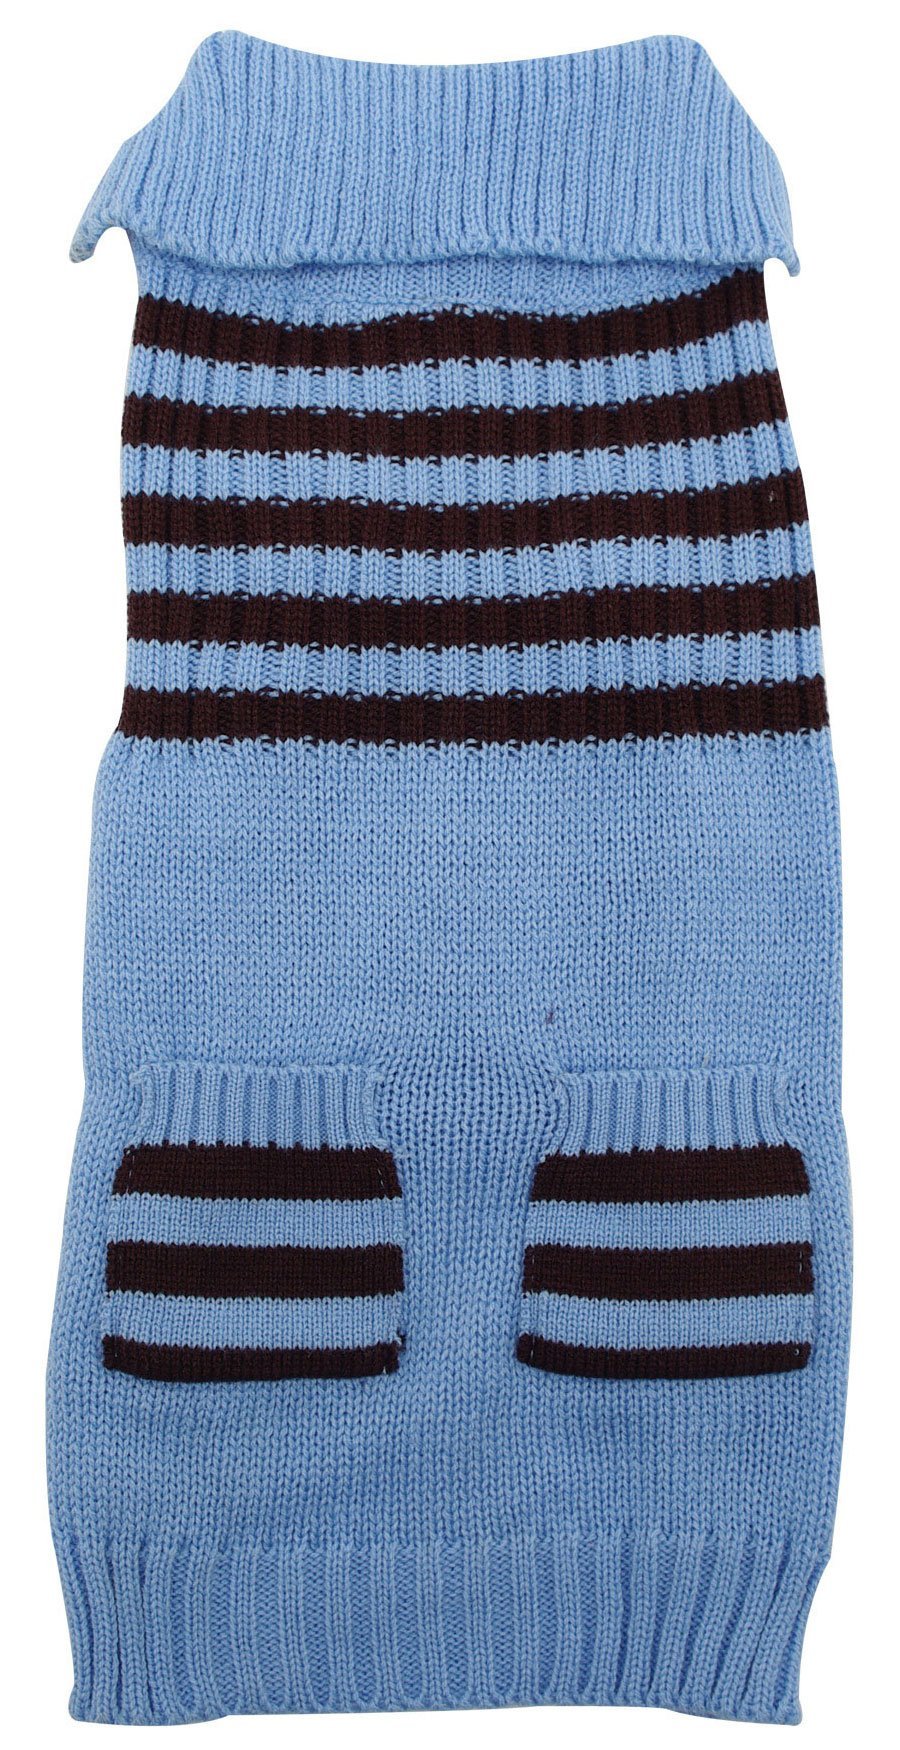 [Australia] - Dogit Striped Dog Sweater, X-Large, Ice Blue 